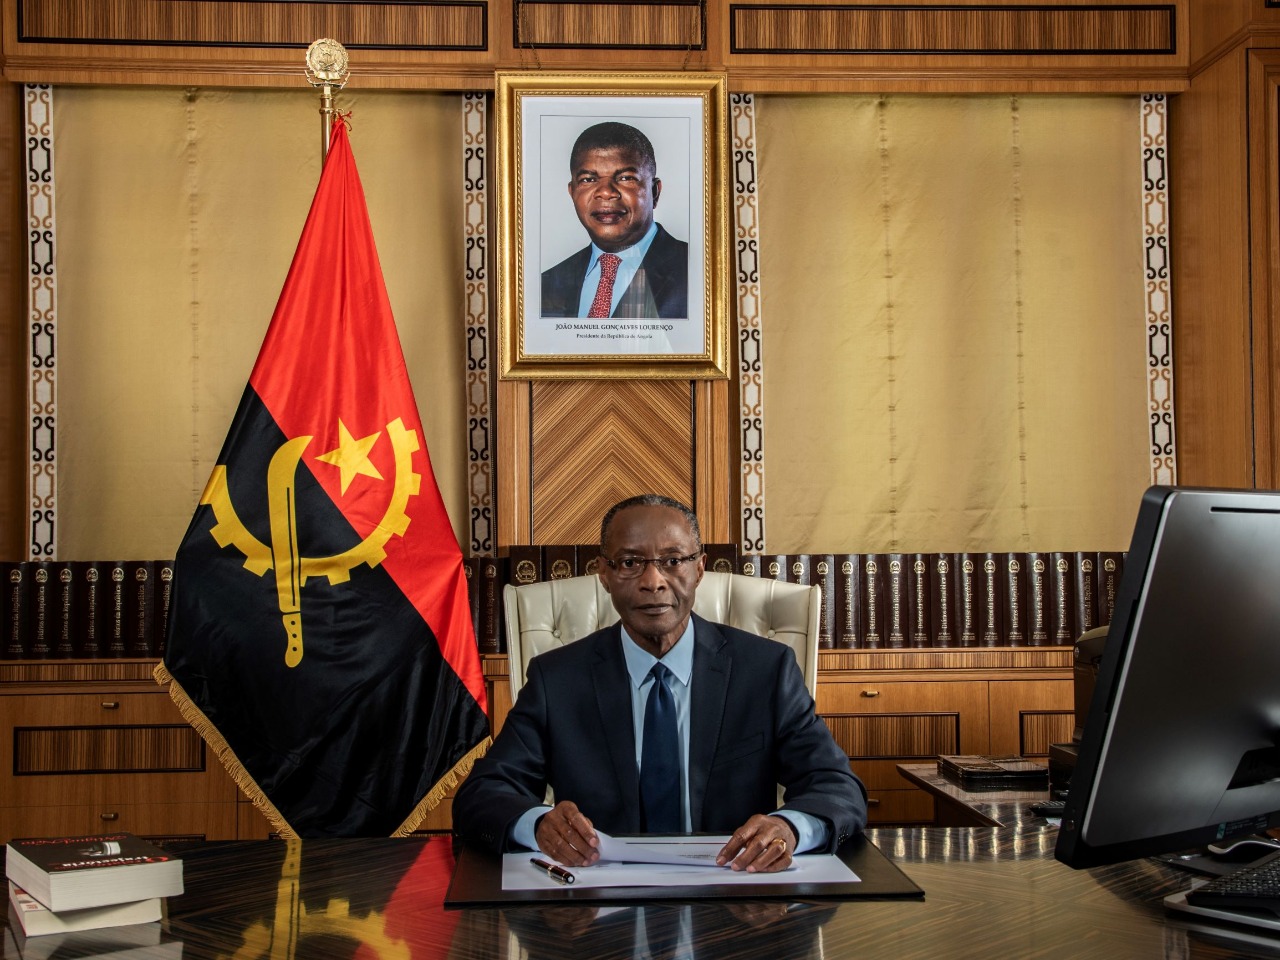 Embaixada Da República De Angola Em Portugal Vice Pr Representa Chefe De Estado Angolano Em 